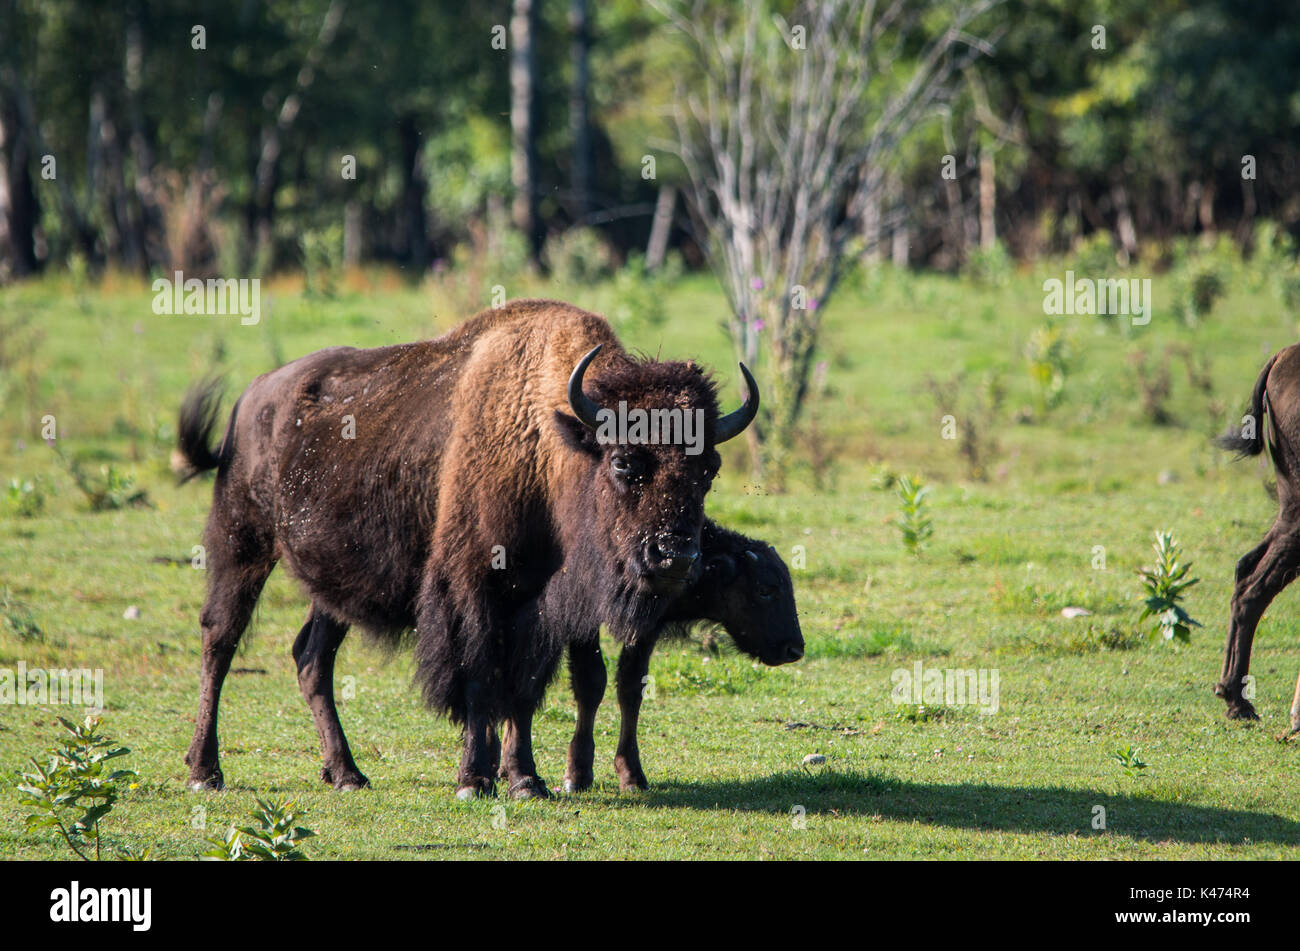 Herd of buffalo grazing in a field Stock Photo